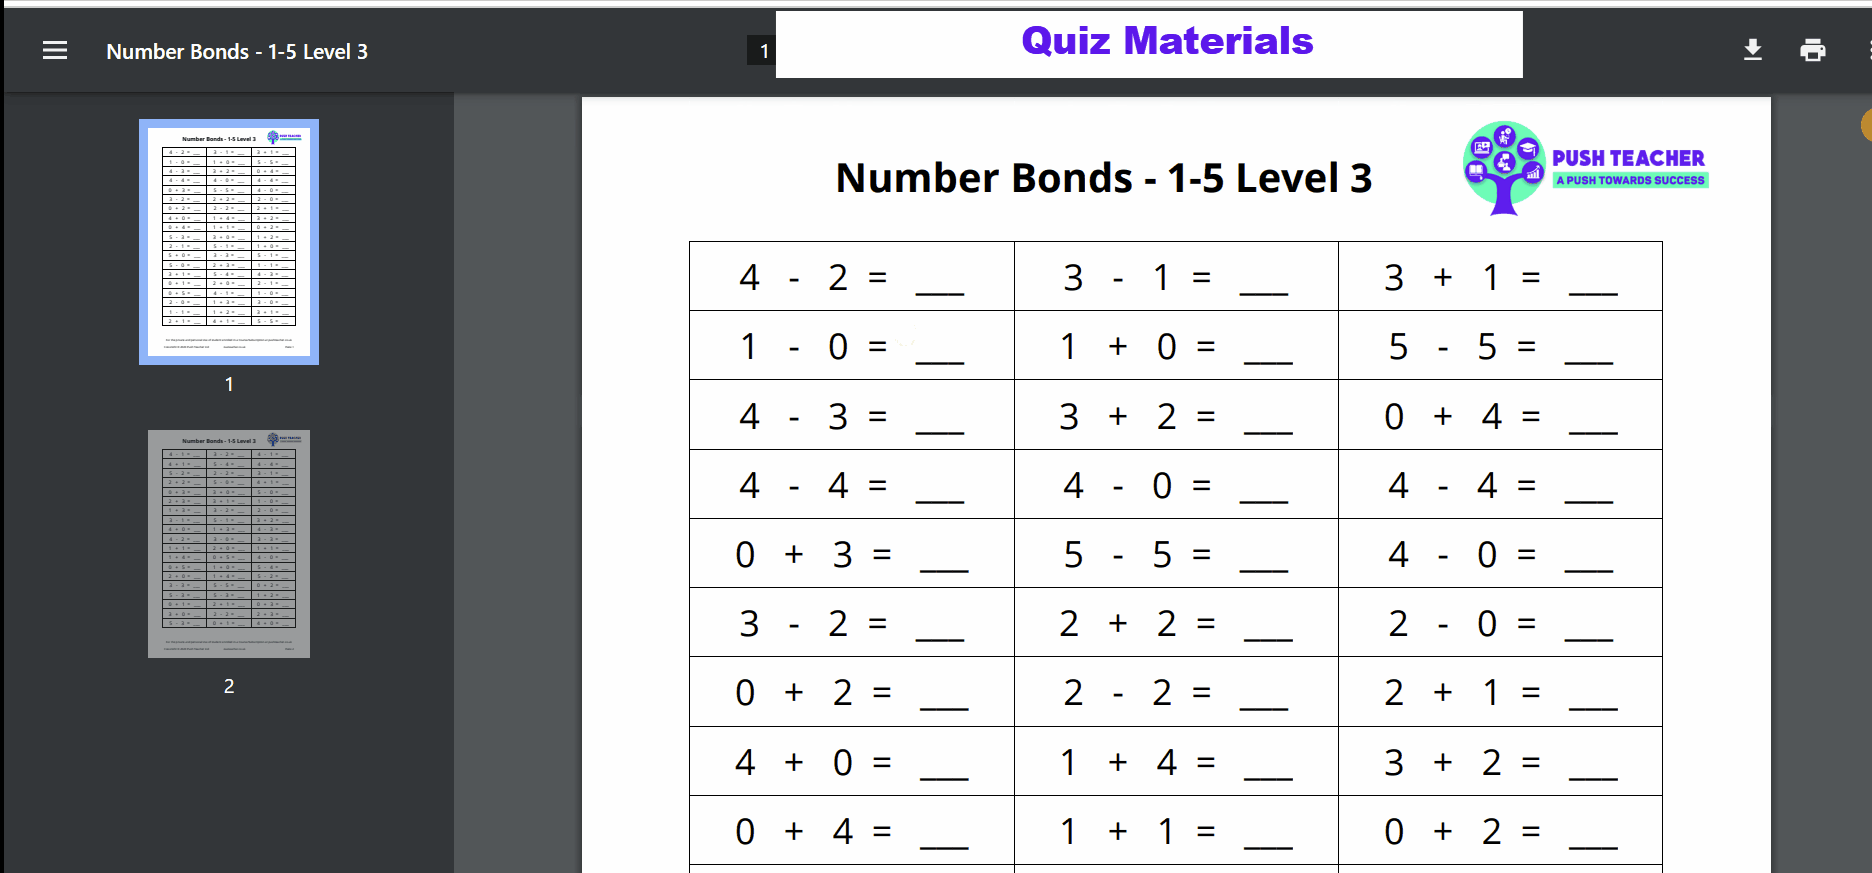 Quiz Materials